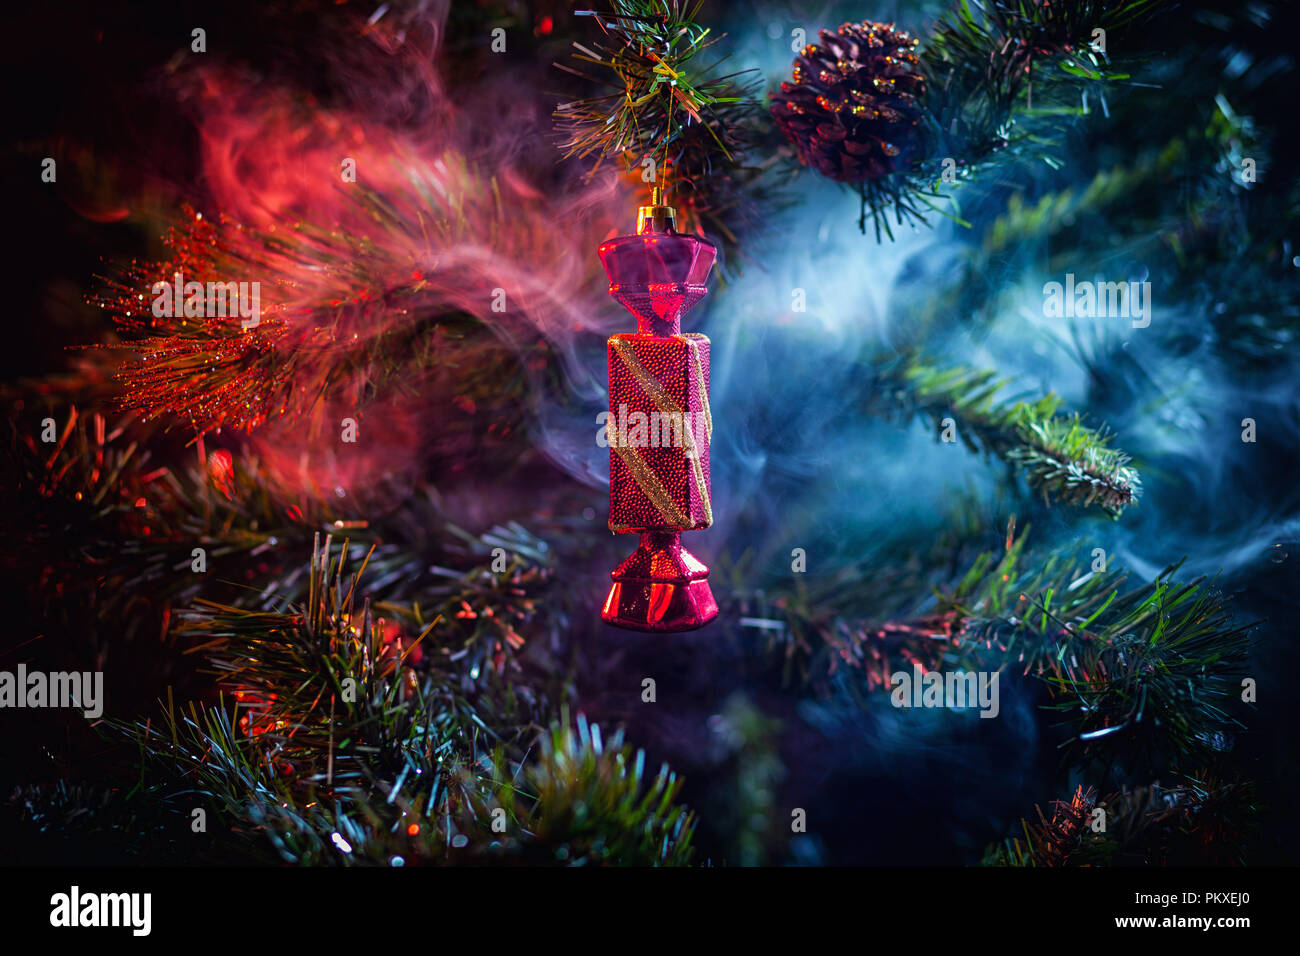 La décoration des boules de Noël rouge brillant avec des bonbons dans la chambre de fumée de couleur violet-rouge, sur un fond d'arbres de Noël. Concept d'une voiture de Noël moderne Banque D'Images